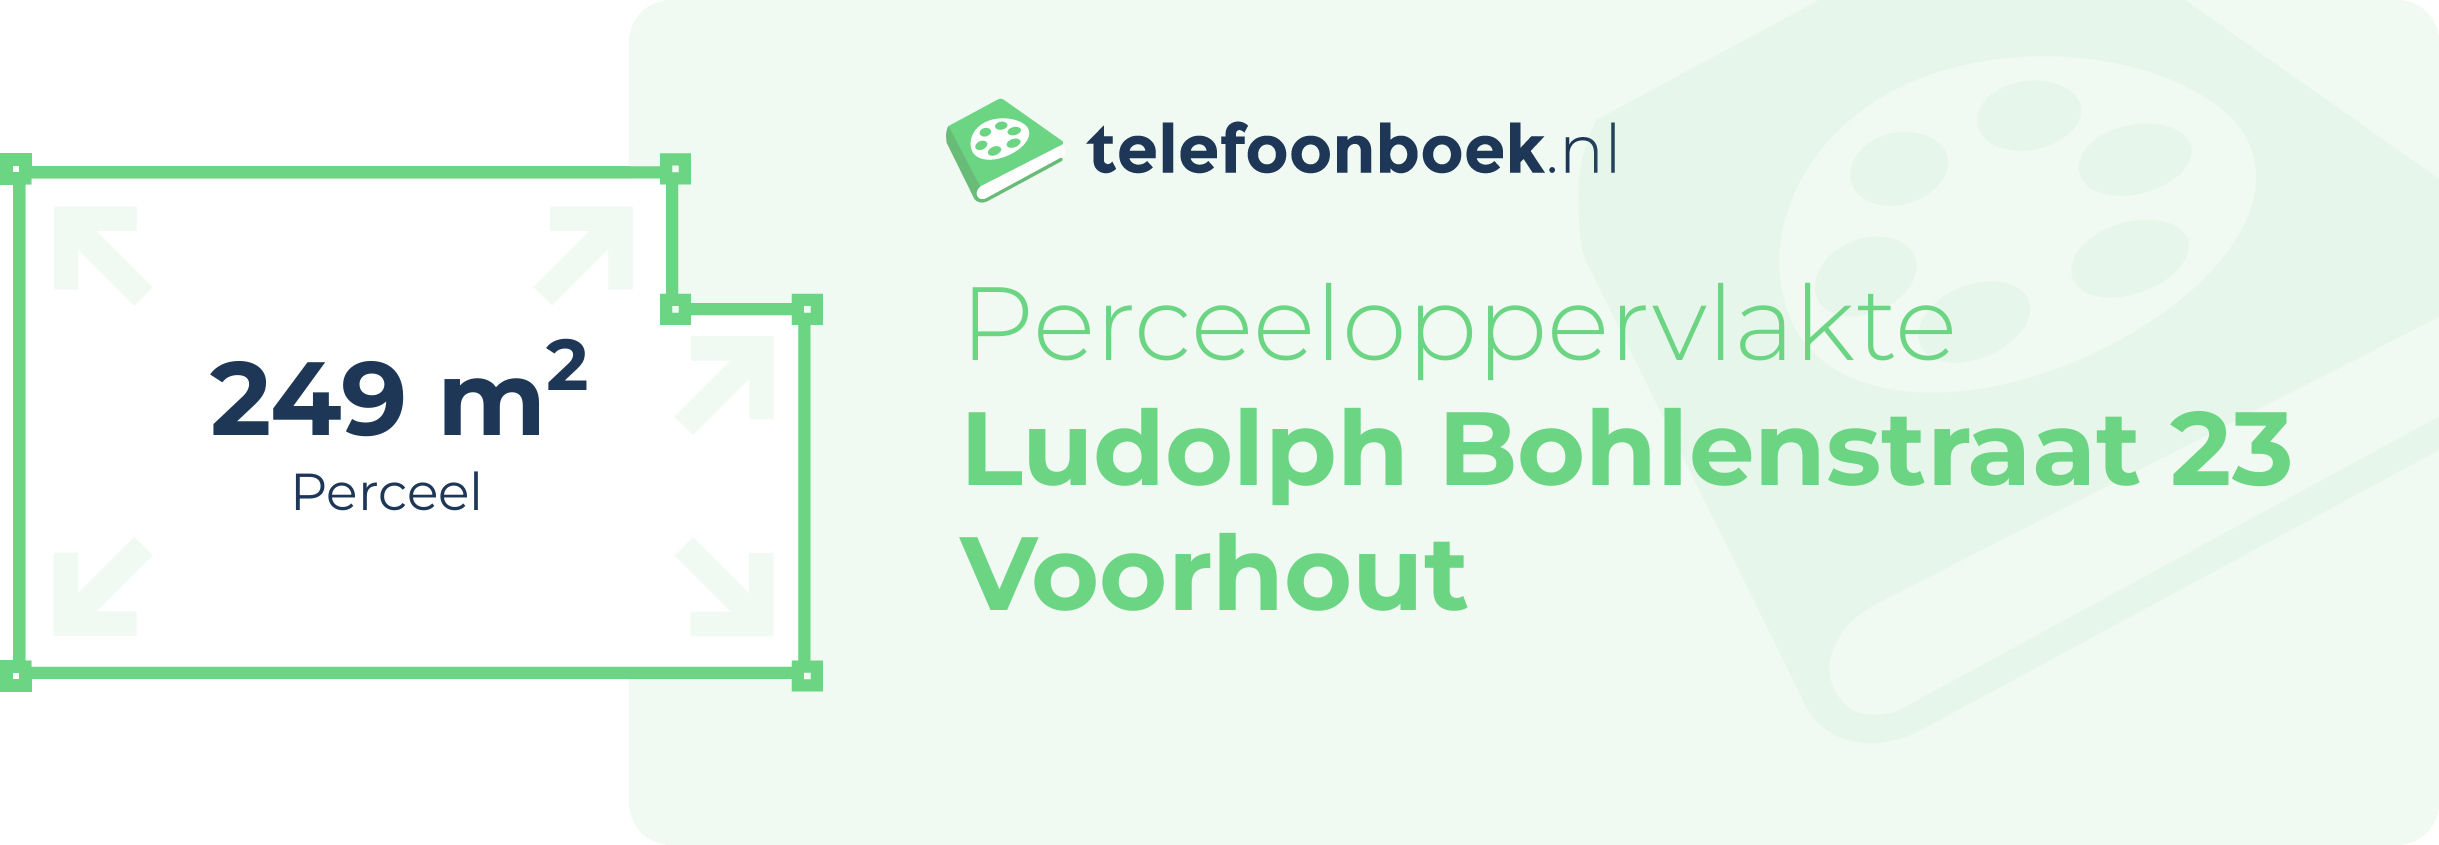 Perceeloppervlakte Ludolph Bohlenstraat 23 Voorhout